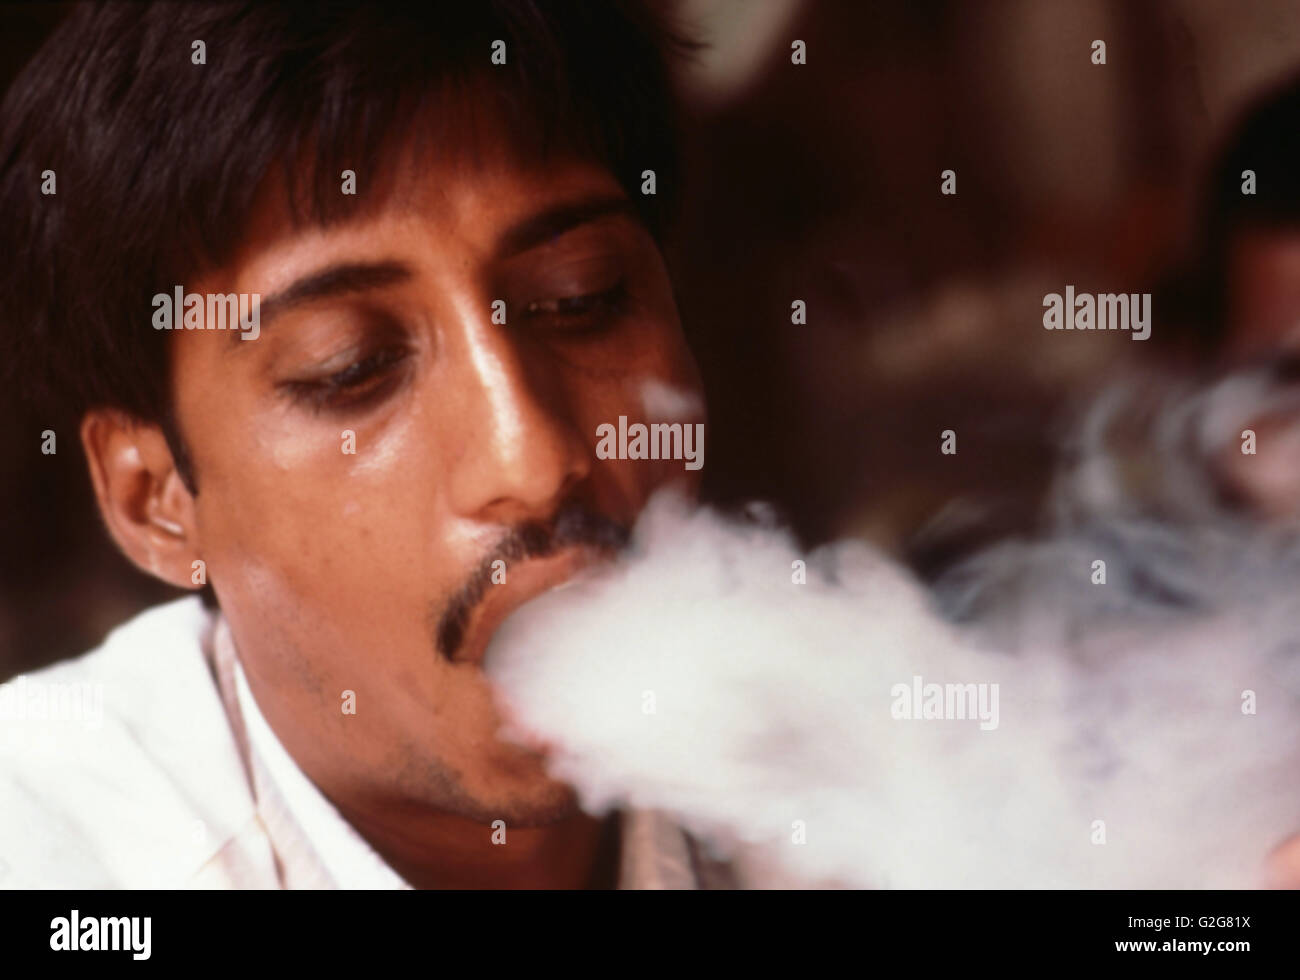 Hashish smoker in India. Stock Photo